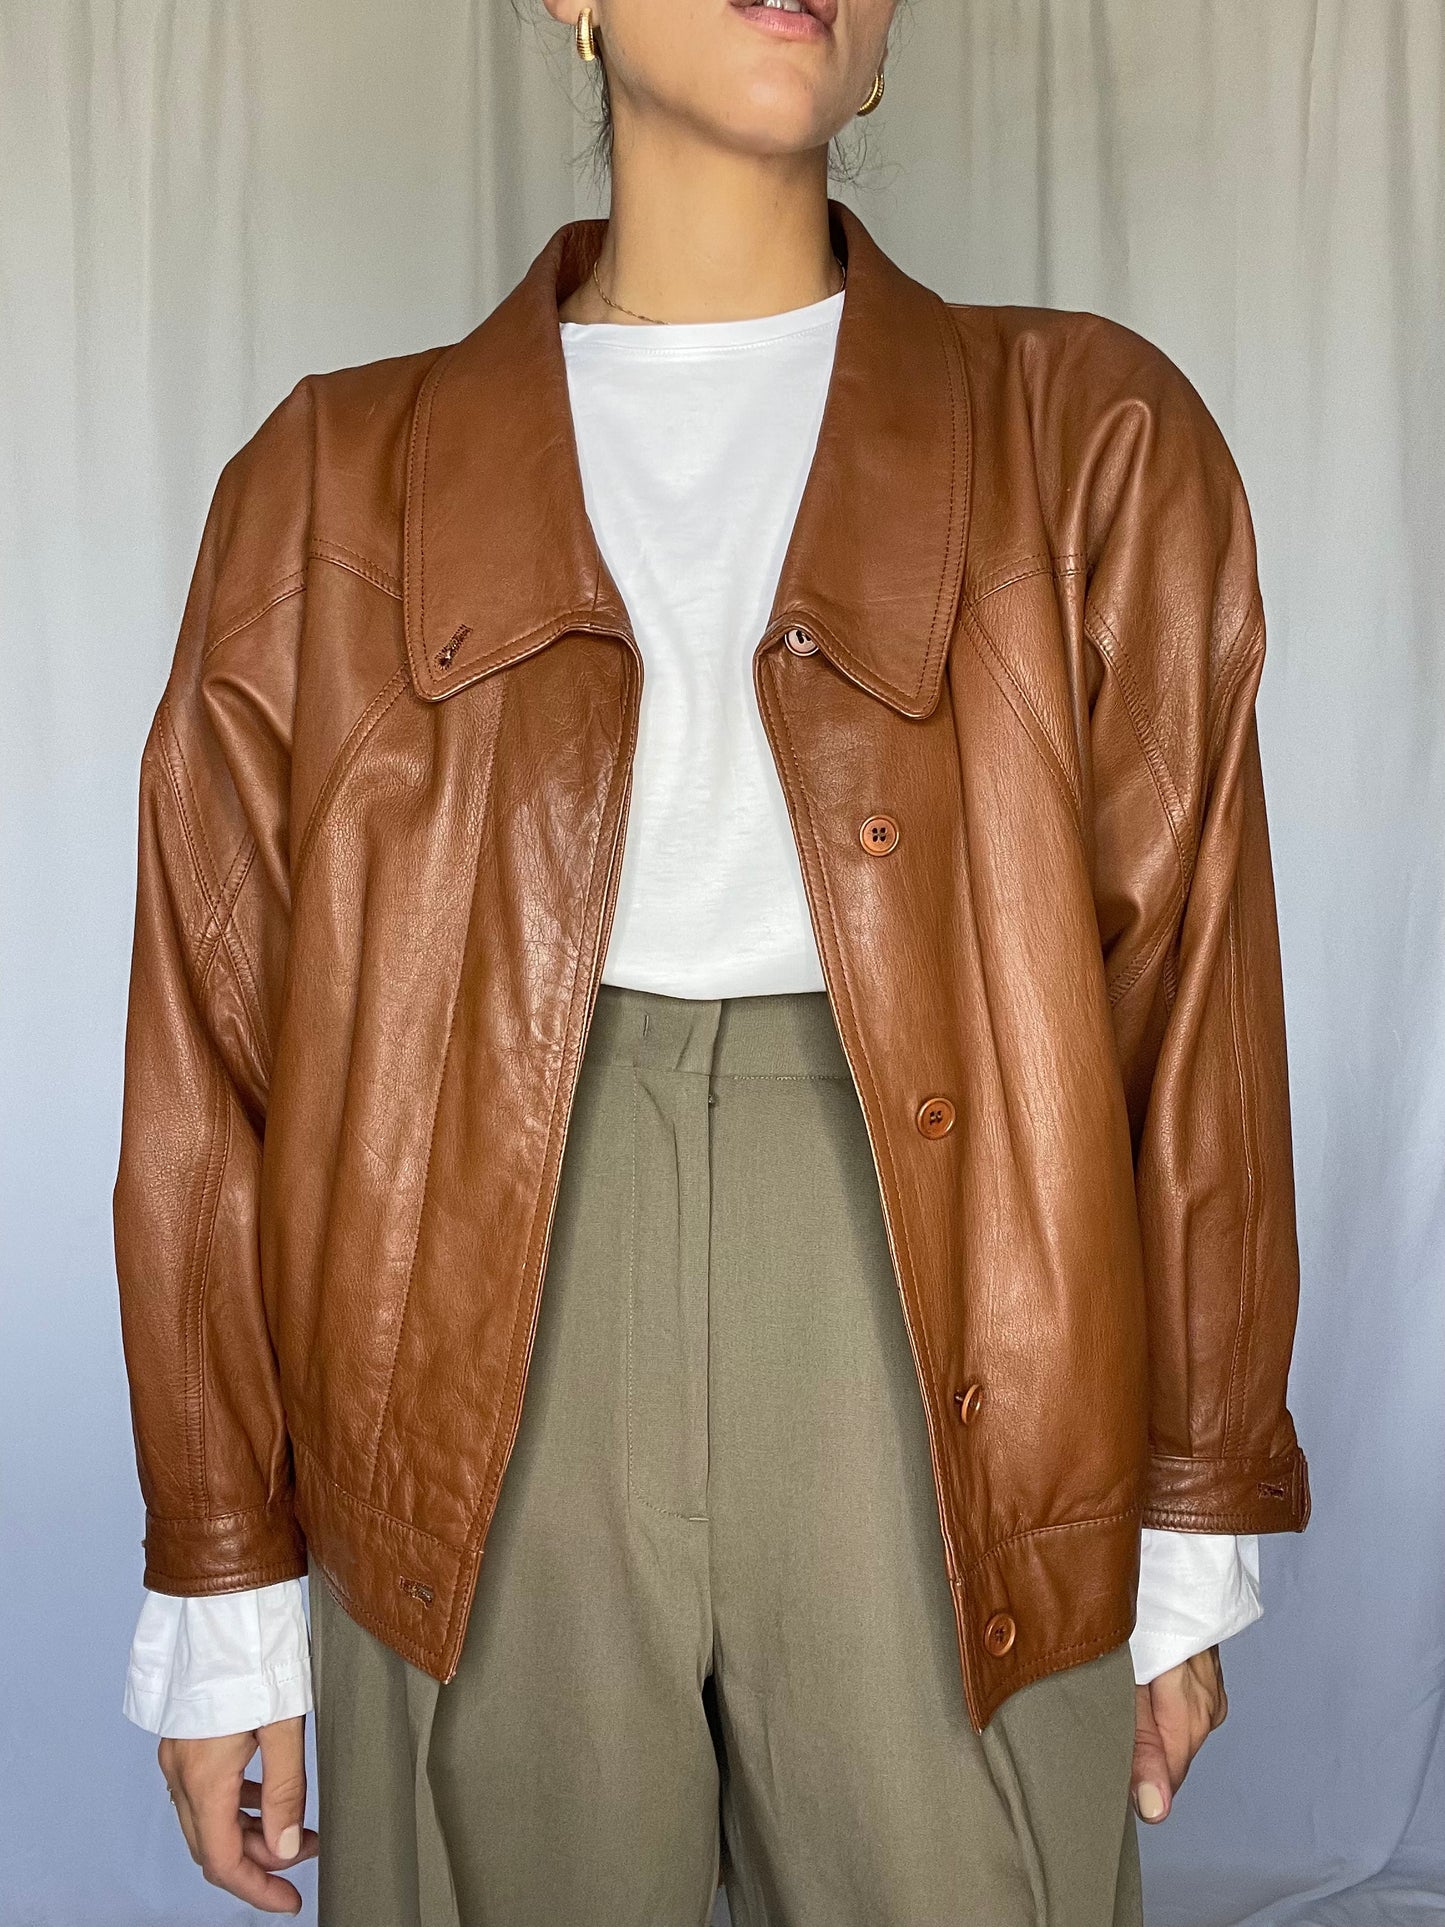 Caramello leather jacket